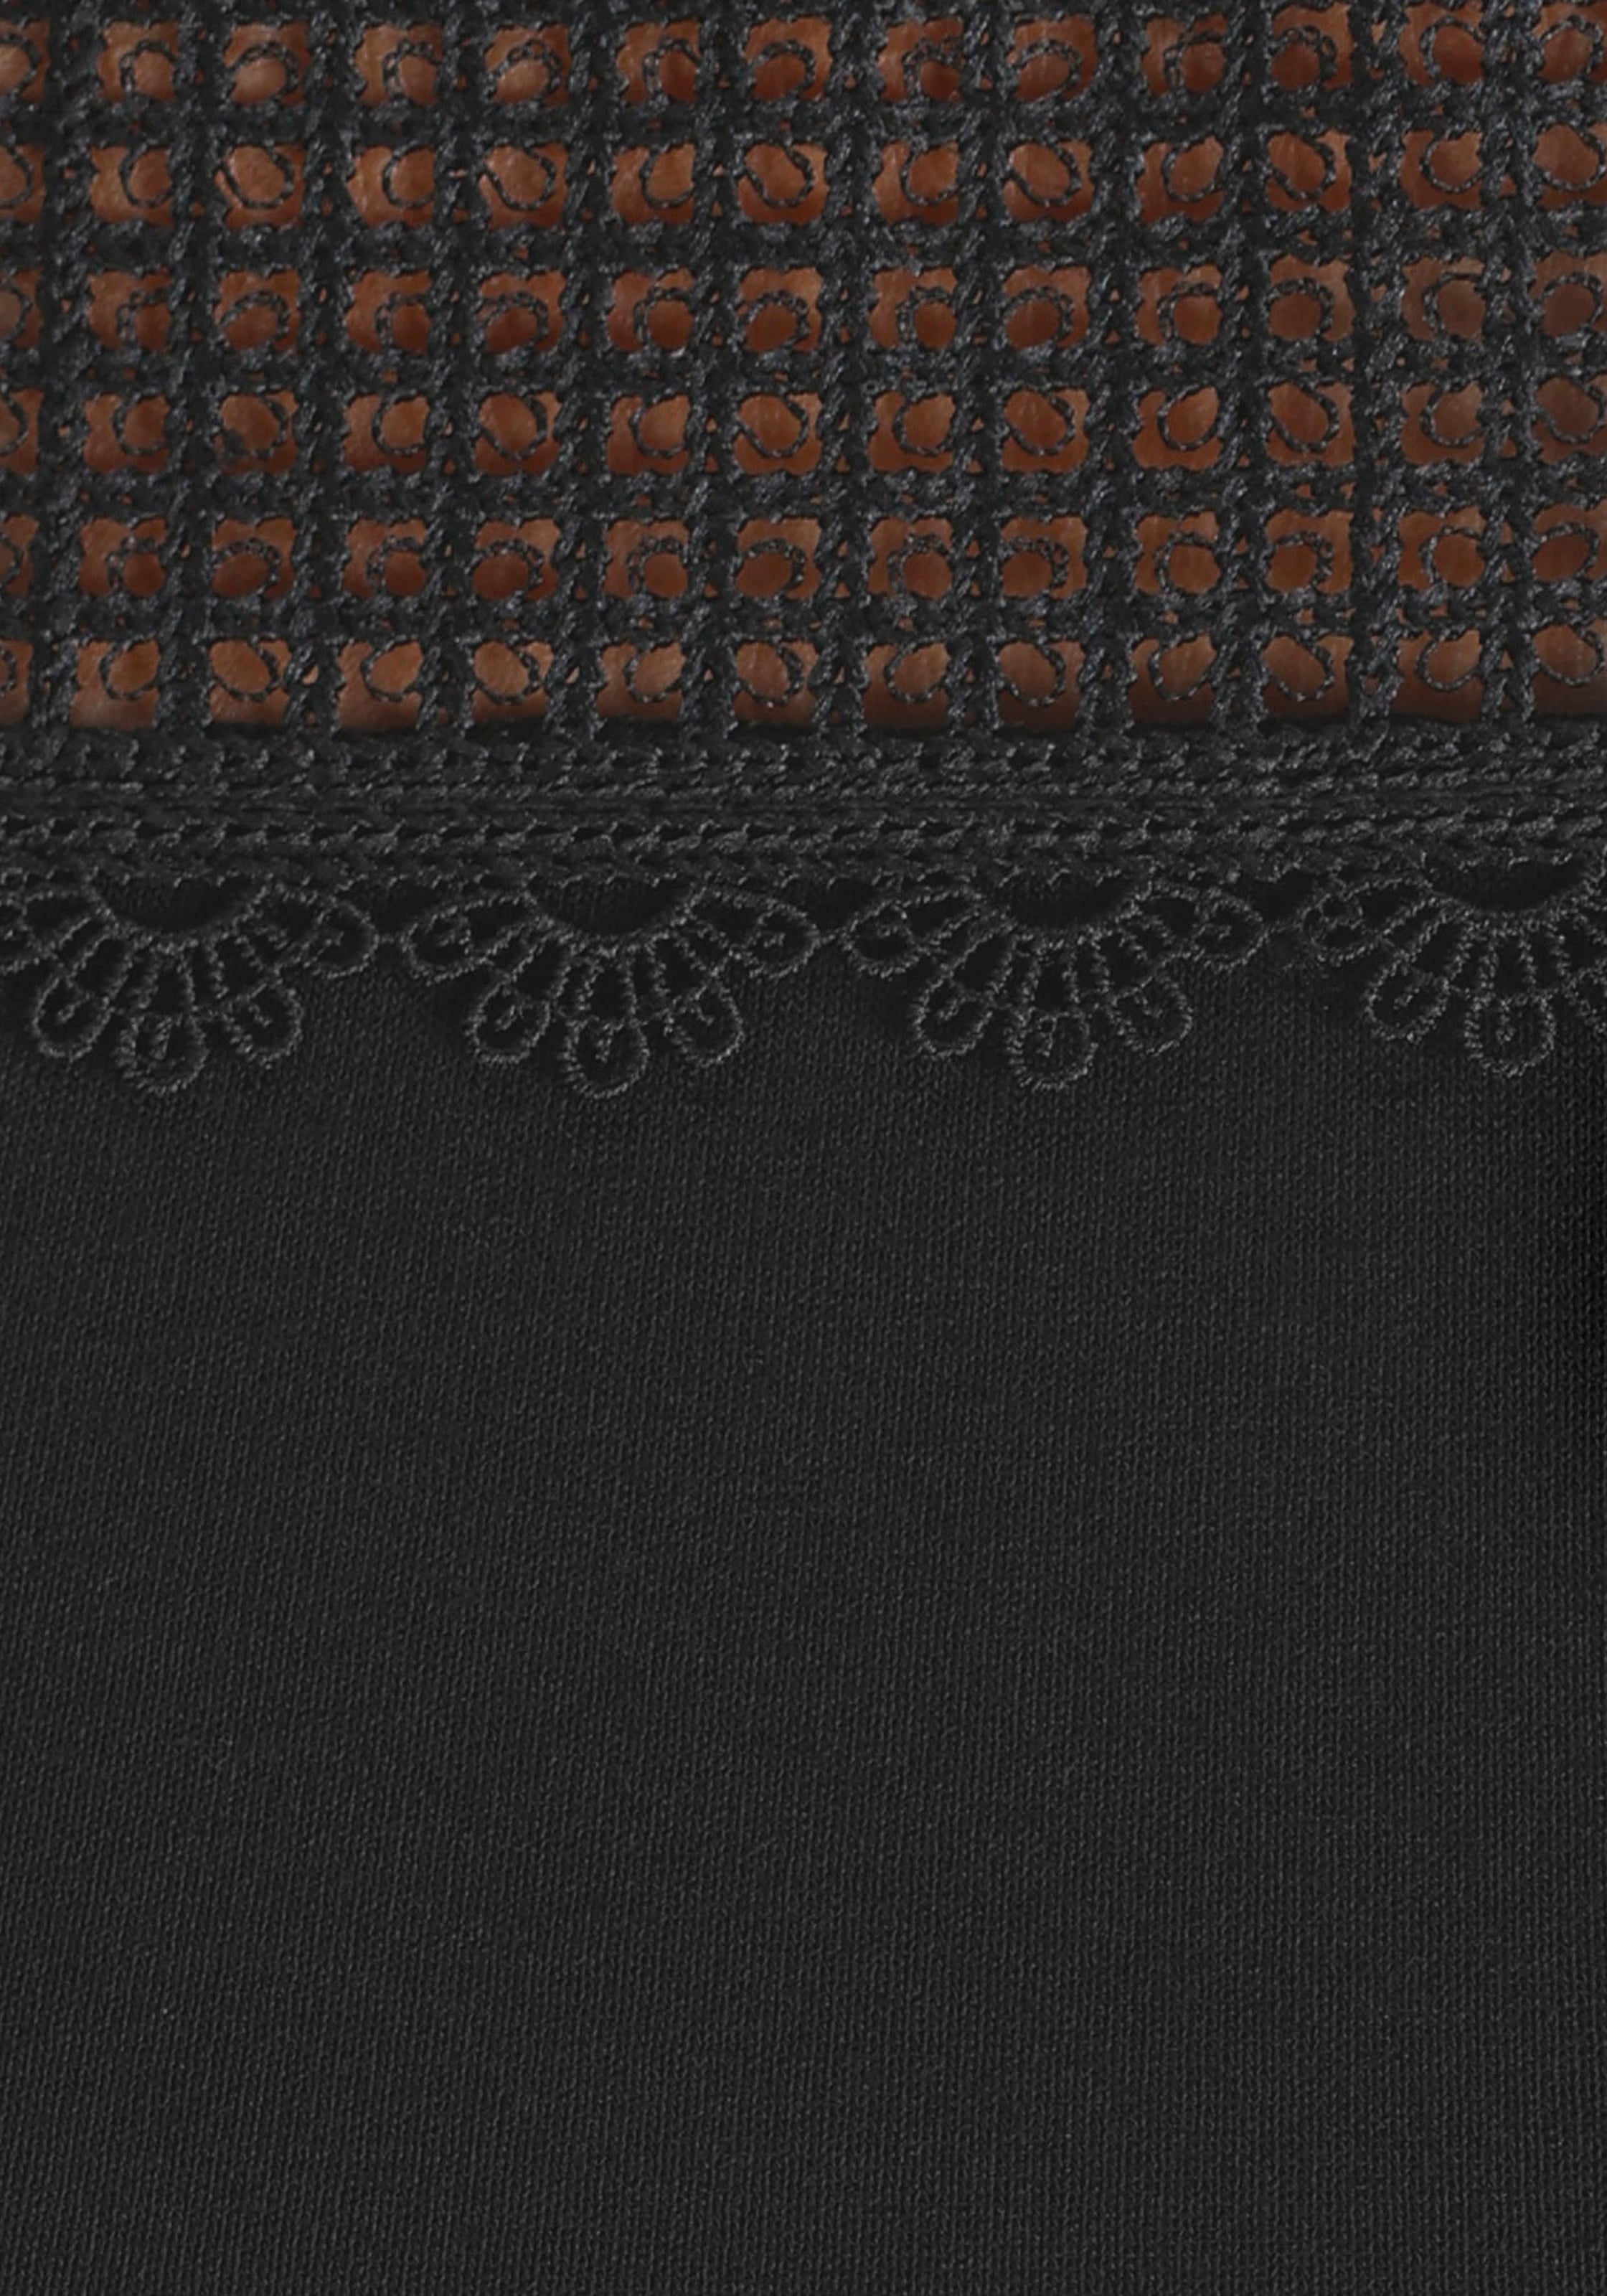 Crochet-Einsatz shoppen Melrose mit Netzshirt,